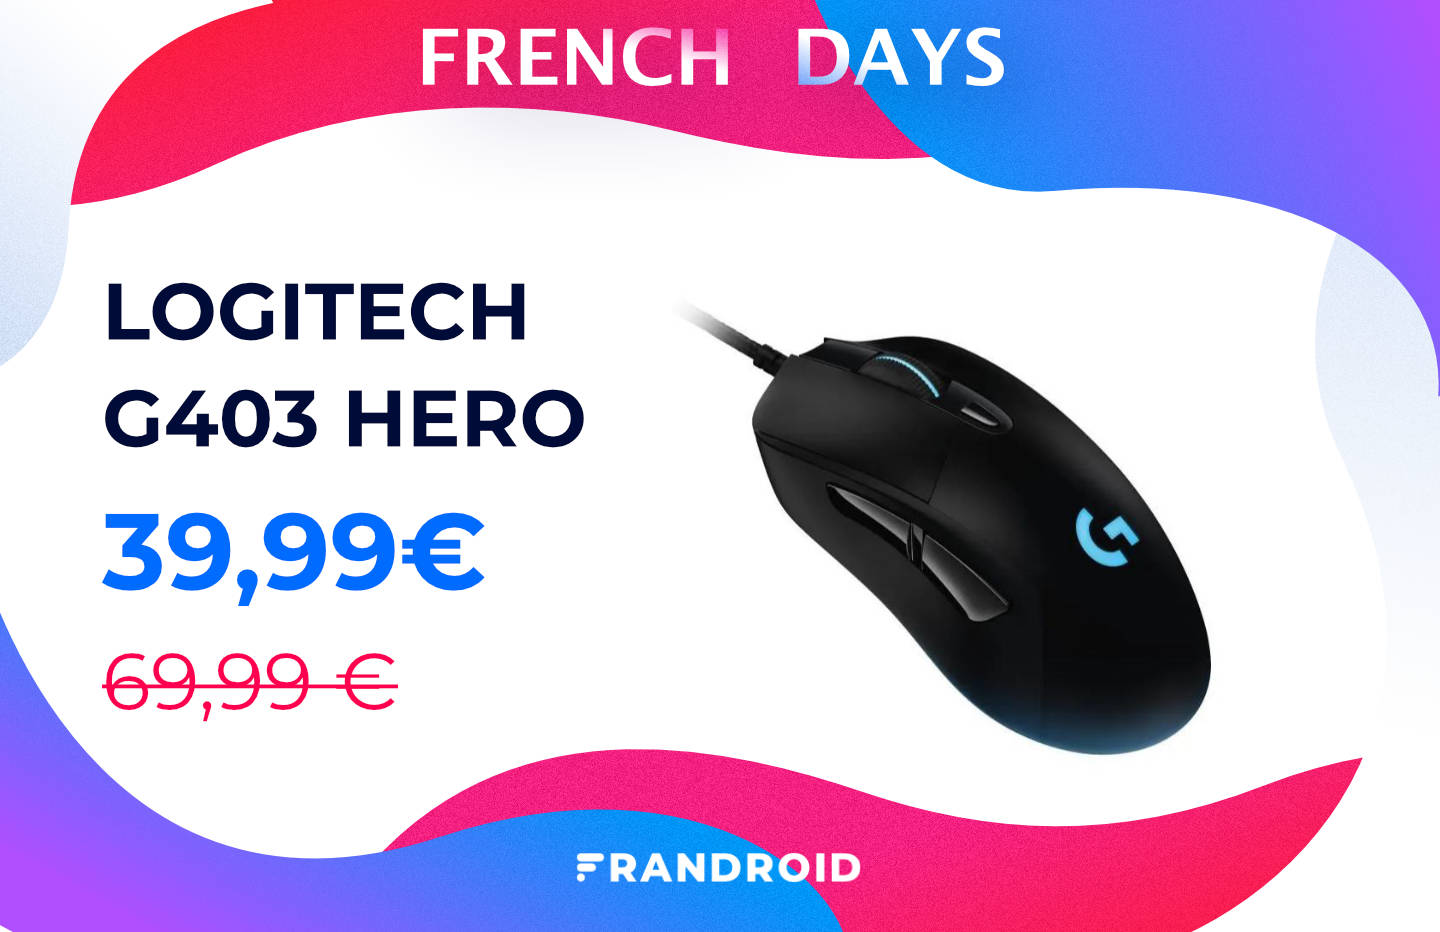 La souris gaming Logitech G403 Hero est moins cher pour les French